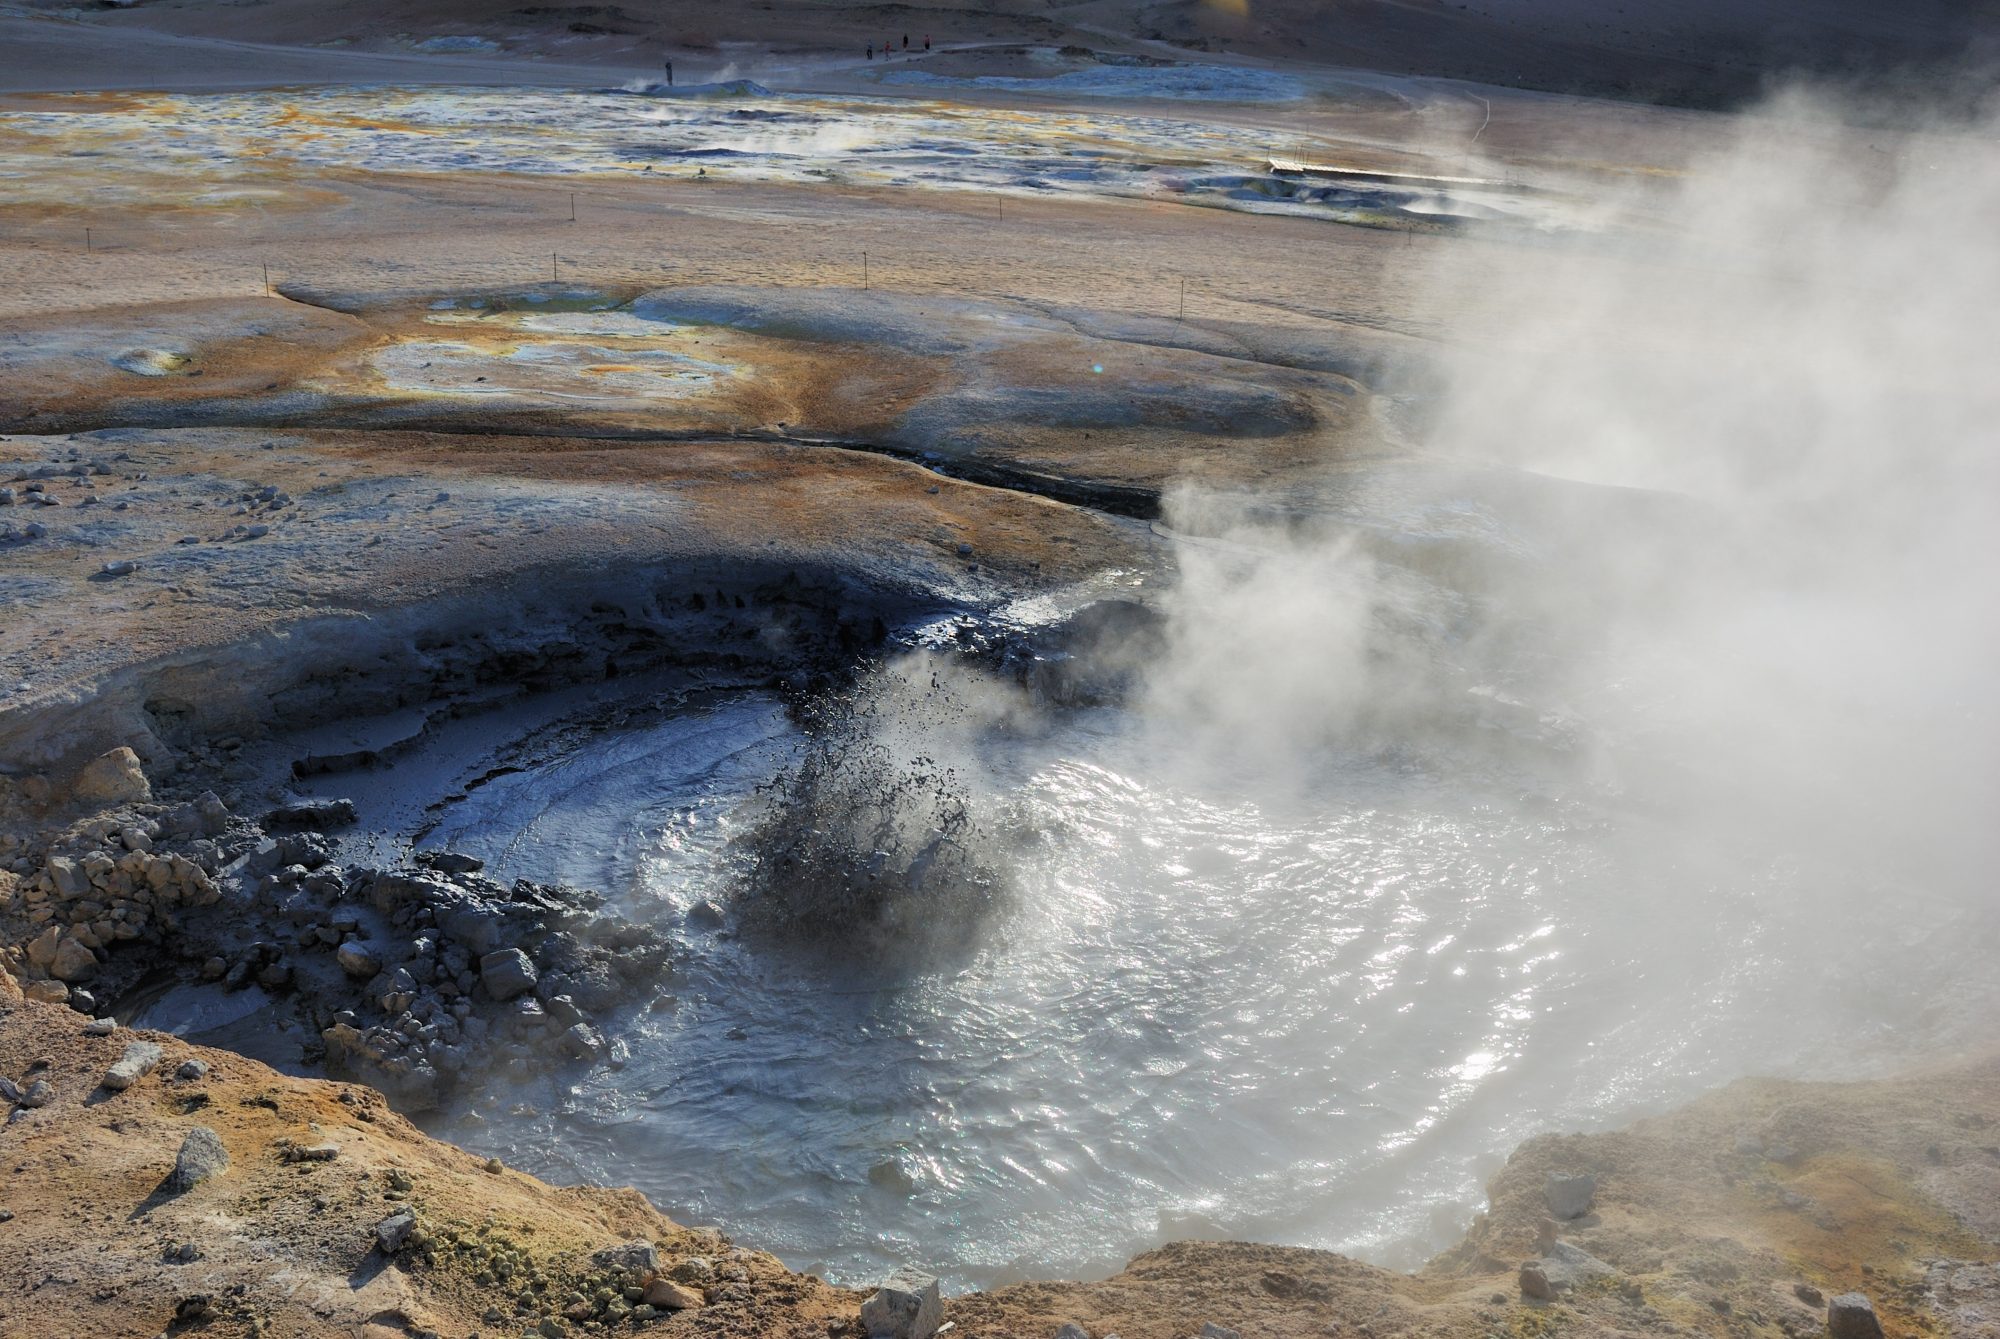 geothermal resource